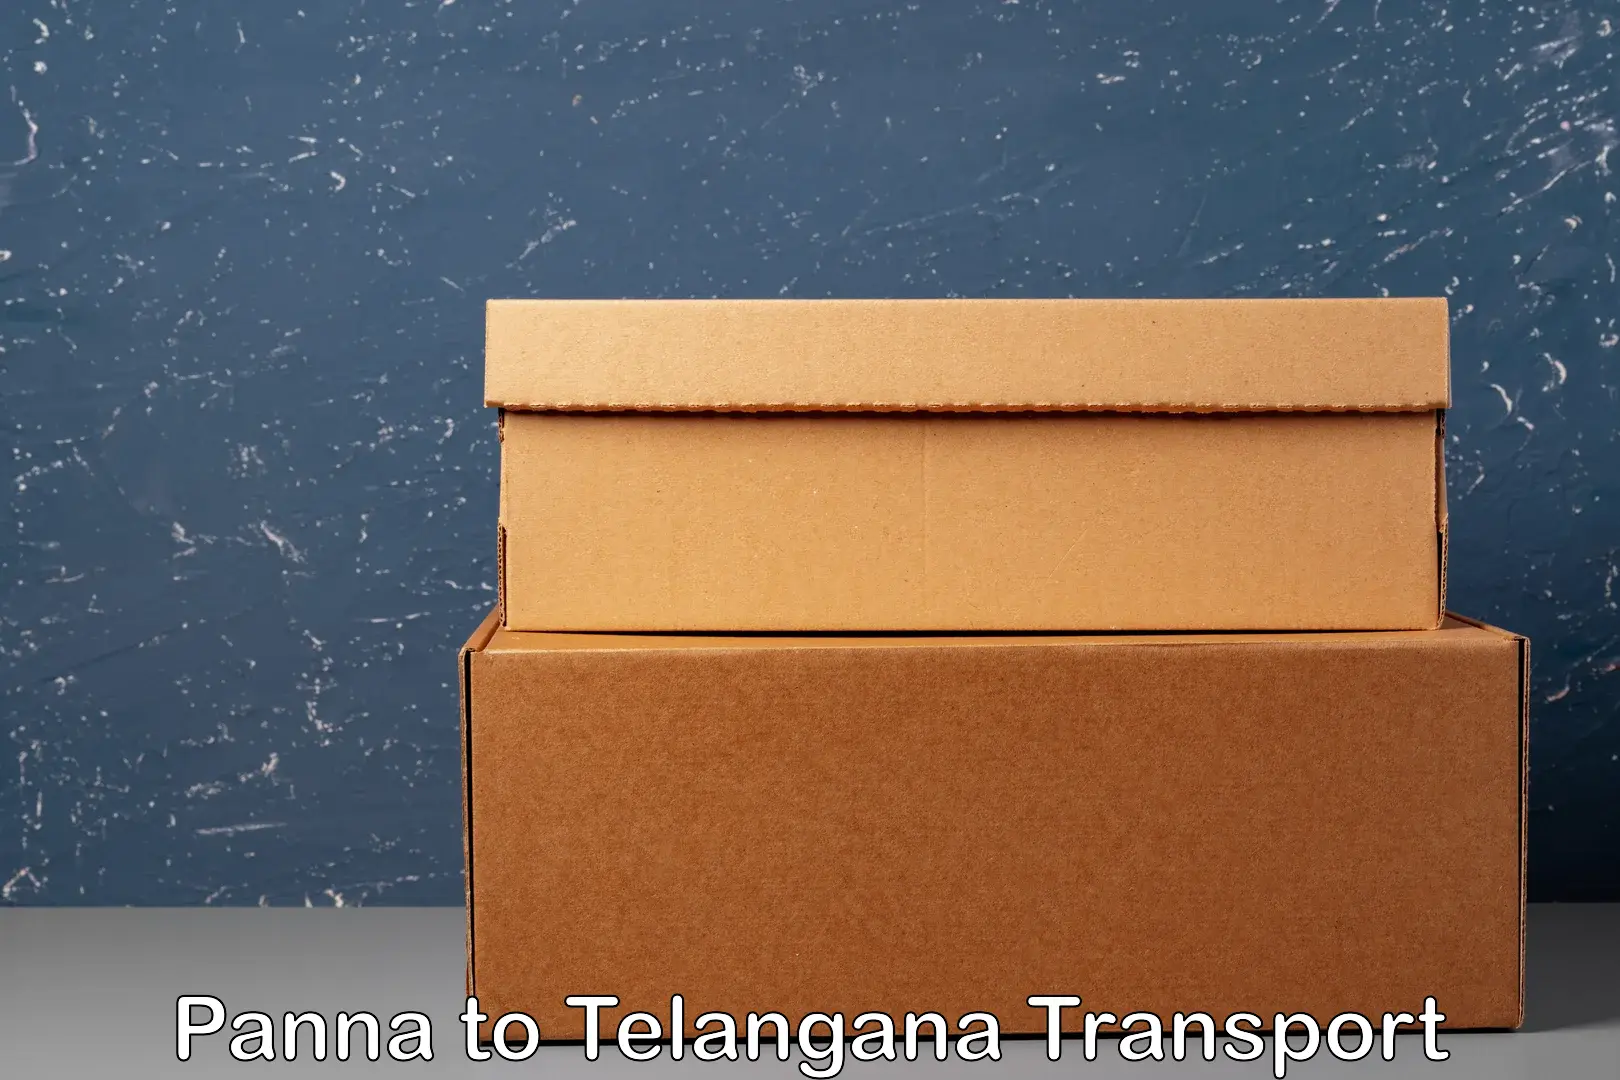 Express transport services Panna to Balanagar